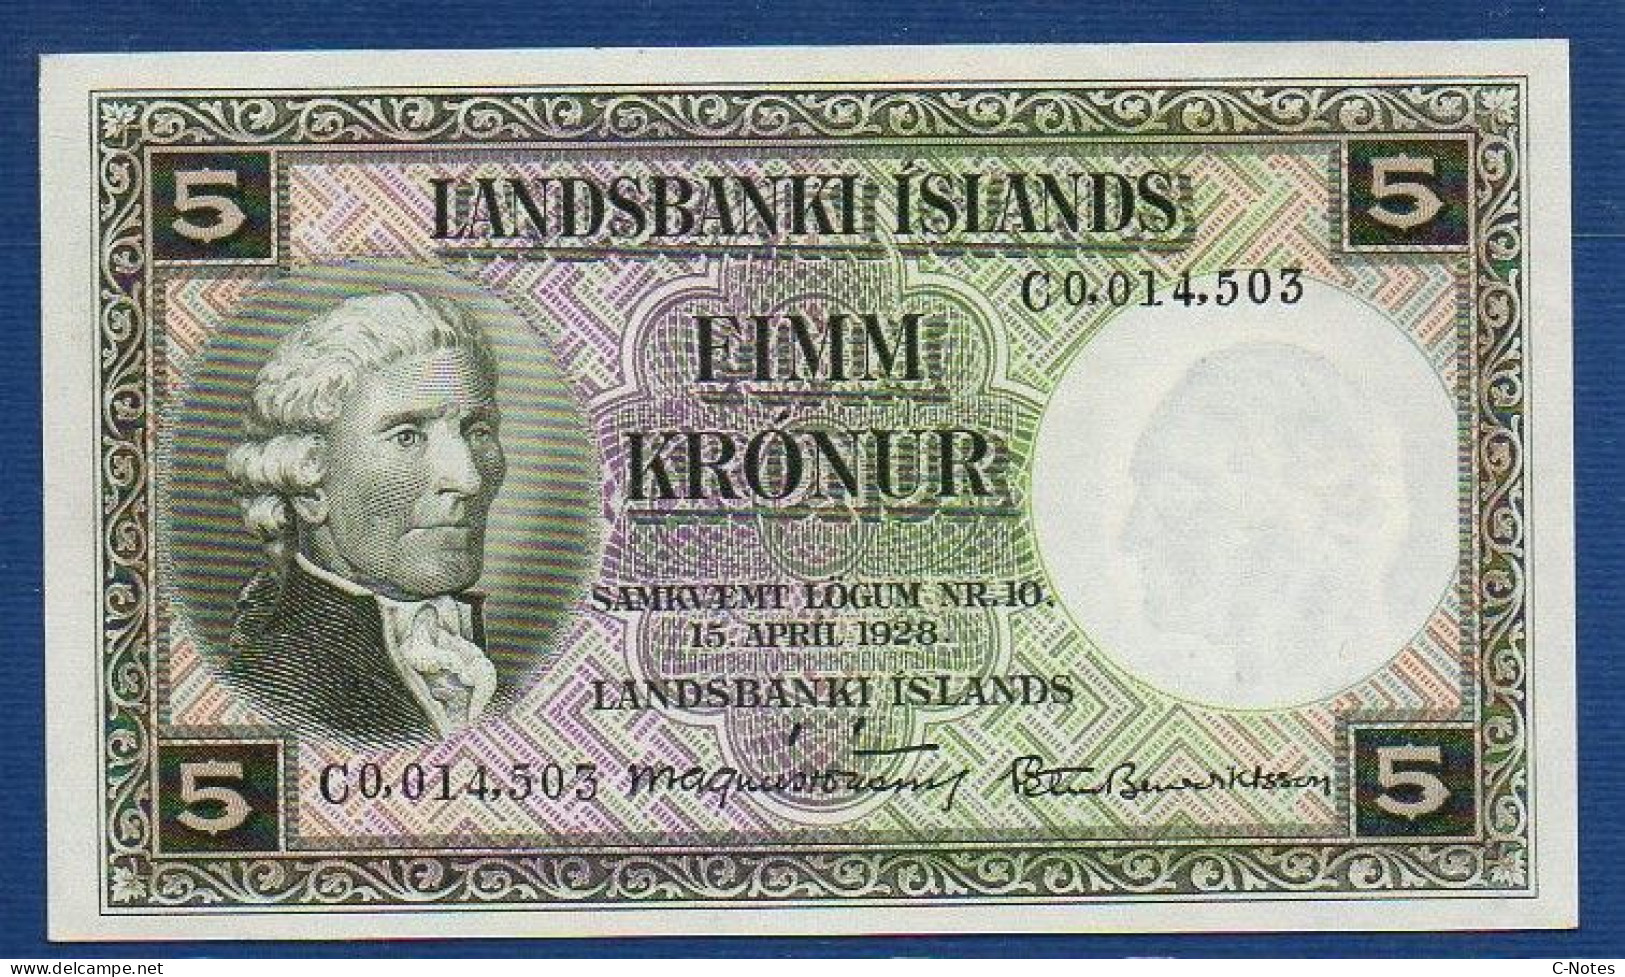 ICELAND - P.32 B6 – 5 Krónur L. 15.04.1928, UNC, S/n C0,014,503 Signatures: Magnús Jónsson & Pétur Benediktsson - Island